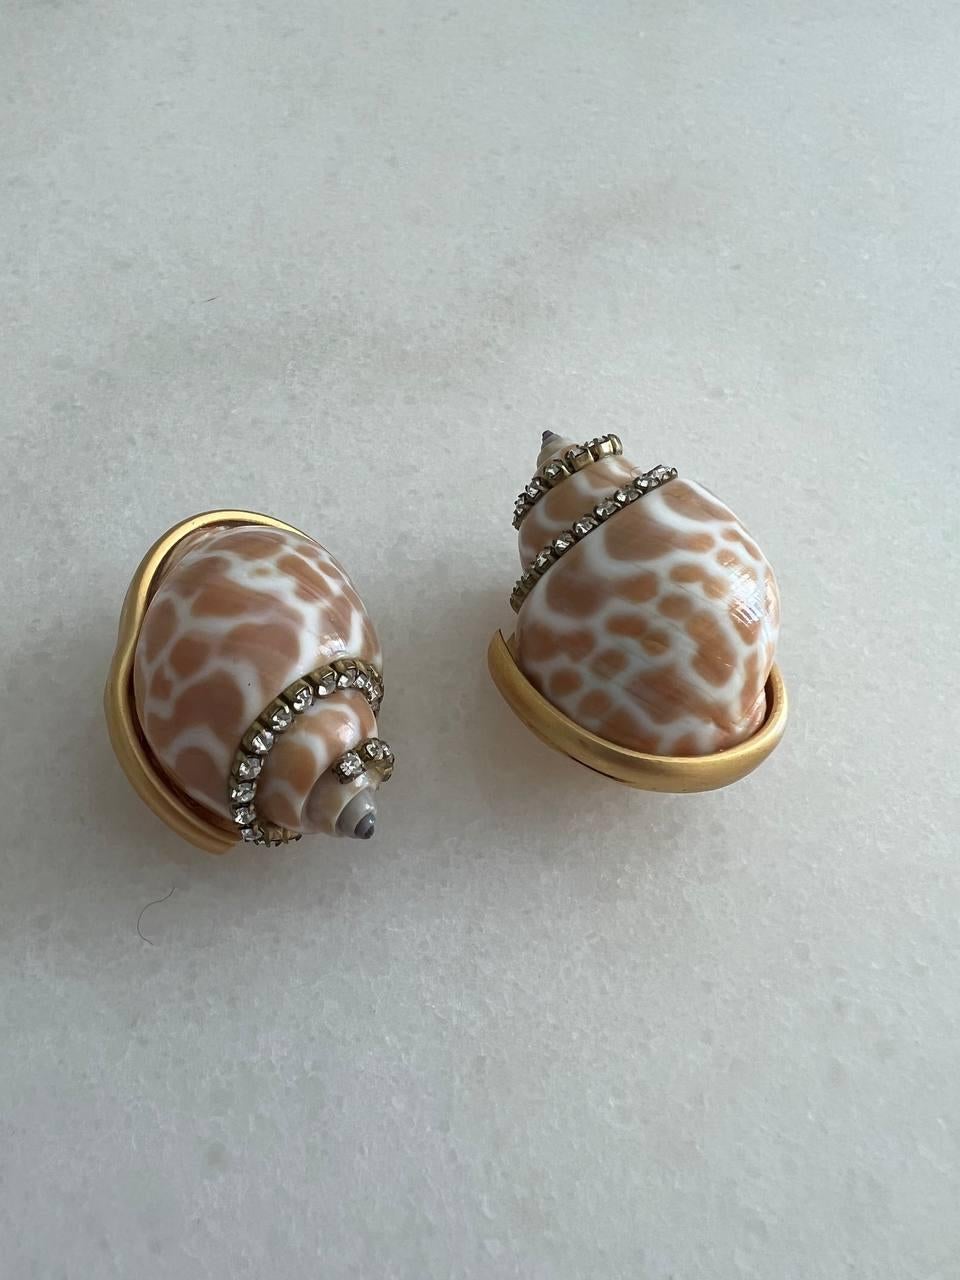 1990s earrings